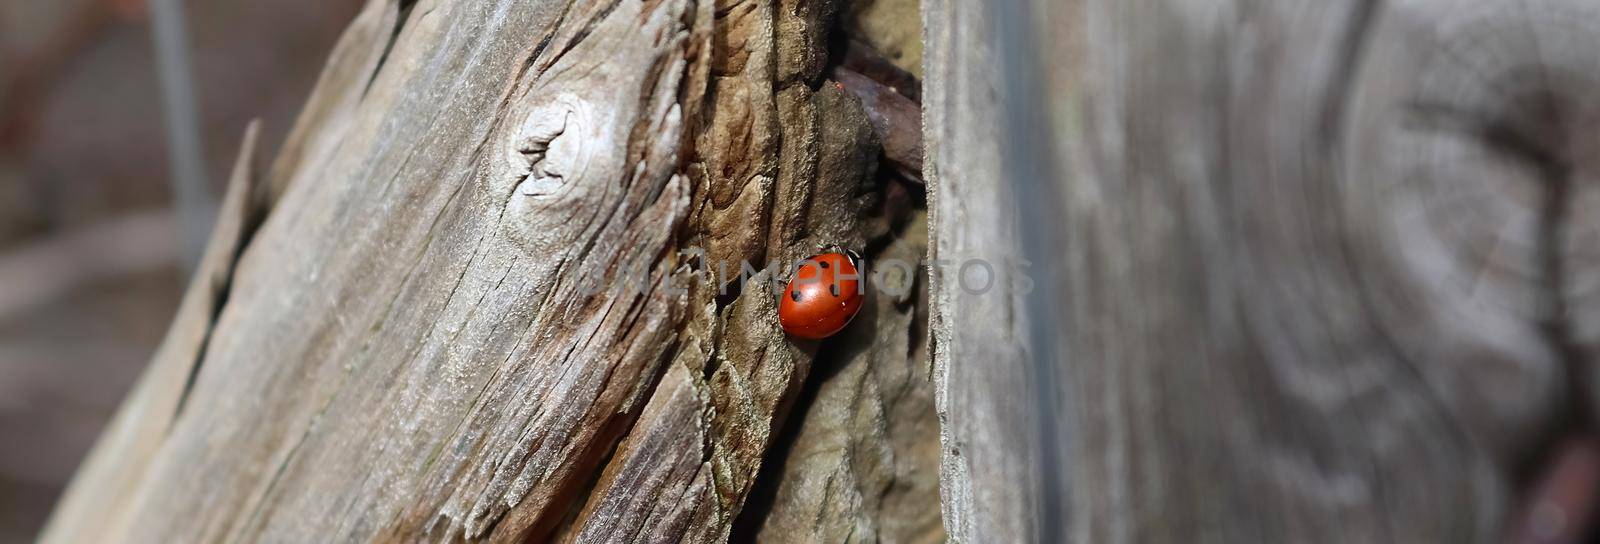 Selective focus macro of a red ladybug walking on weathered wood